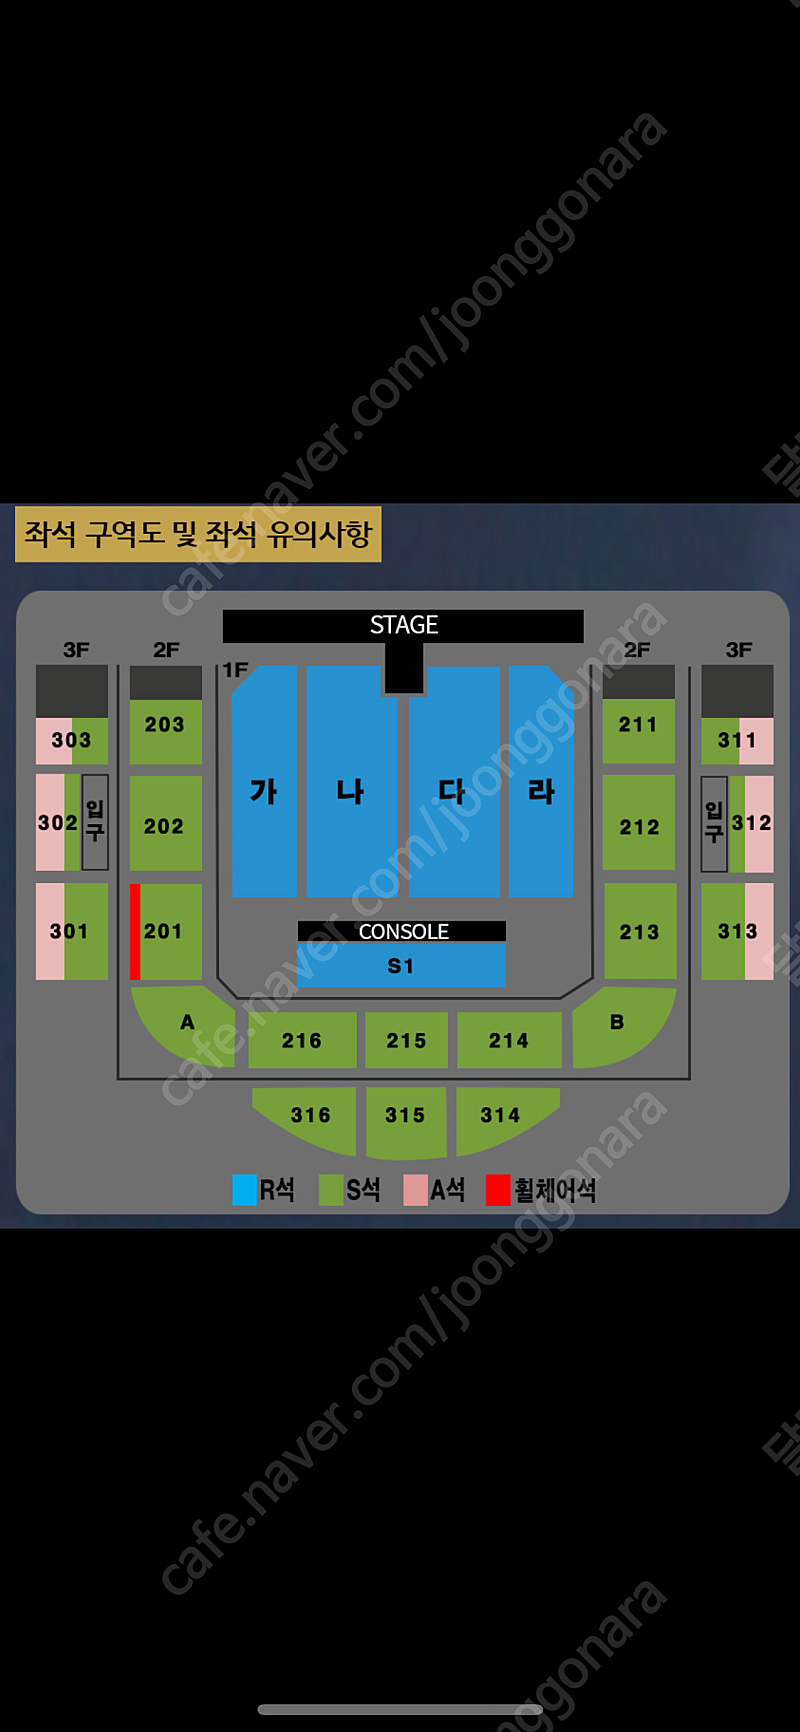 나훈아 원주 콘서트 판매 낮공연 S석 214구역 2열 4연석